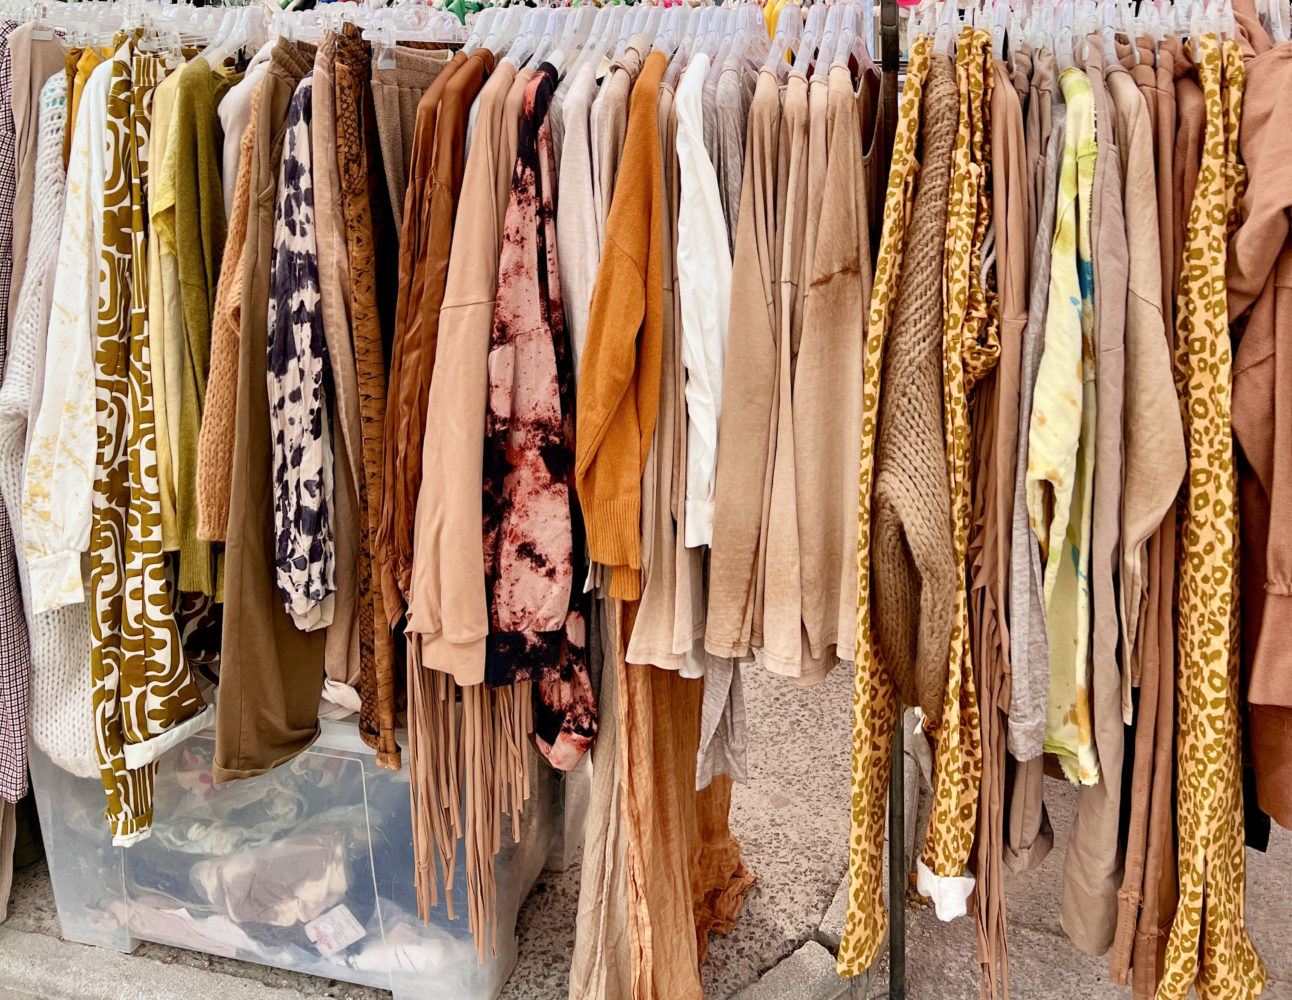 Leopard print clothes in St.Tropez market